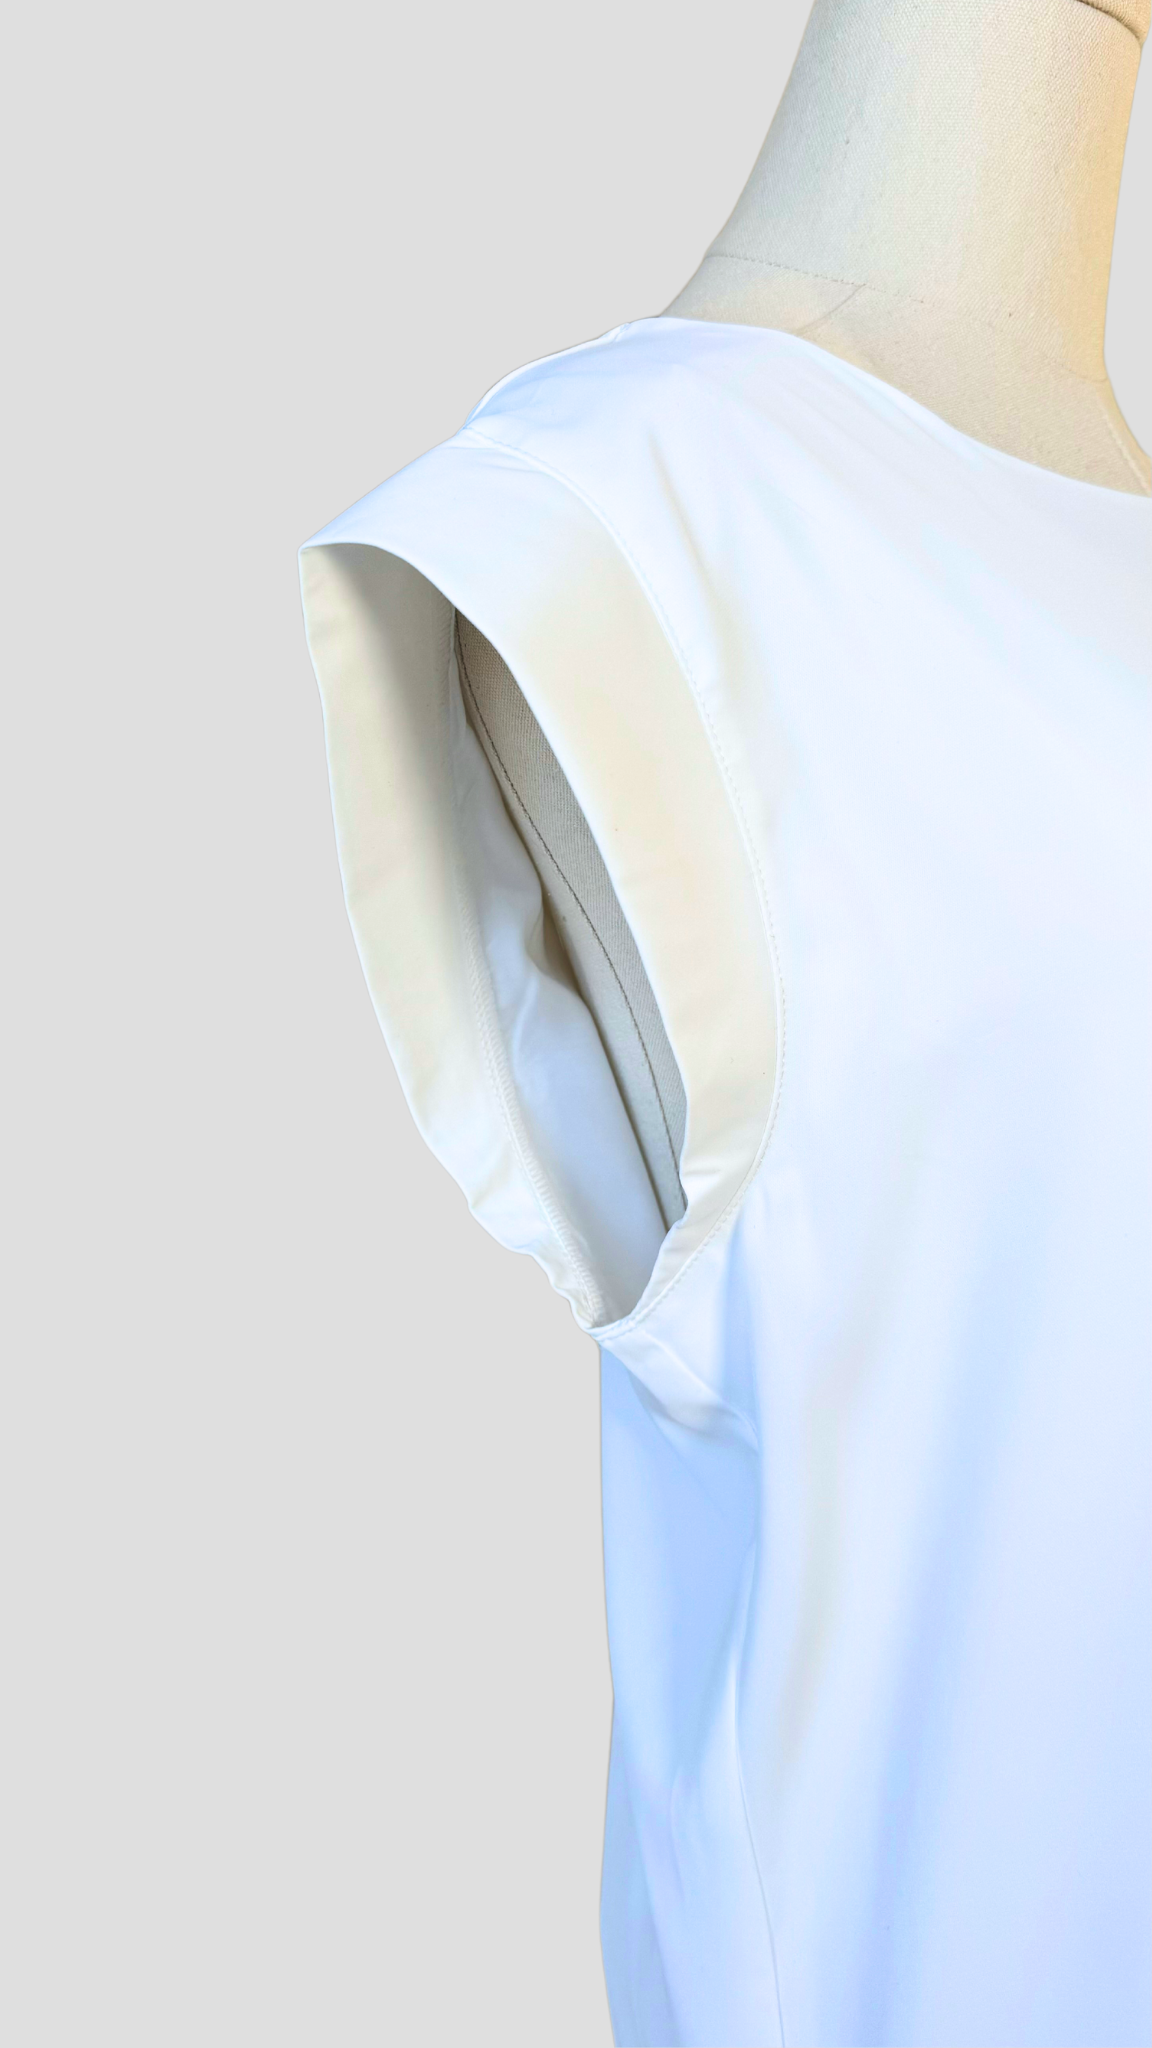 Inner Slip Dress - White